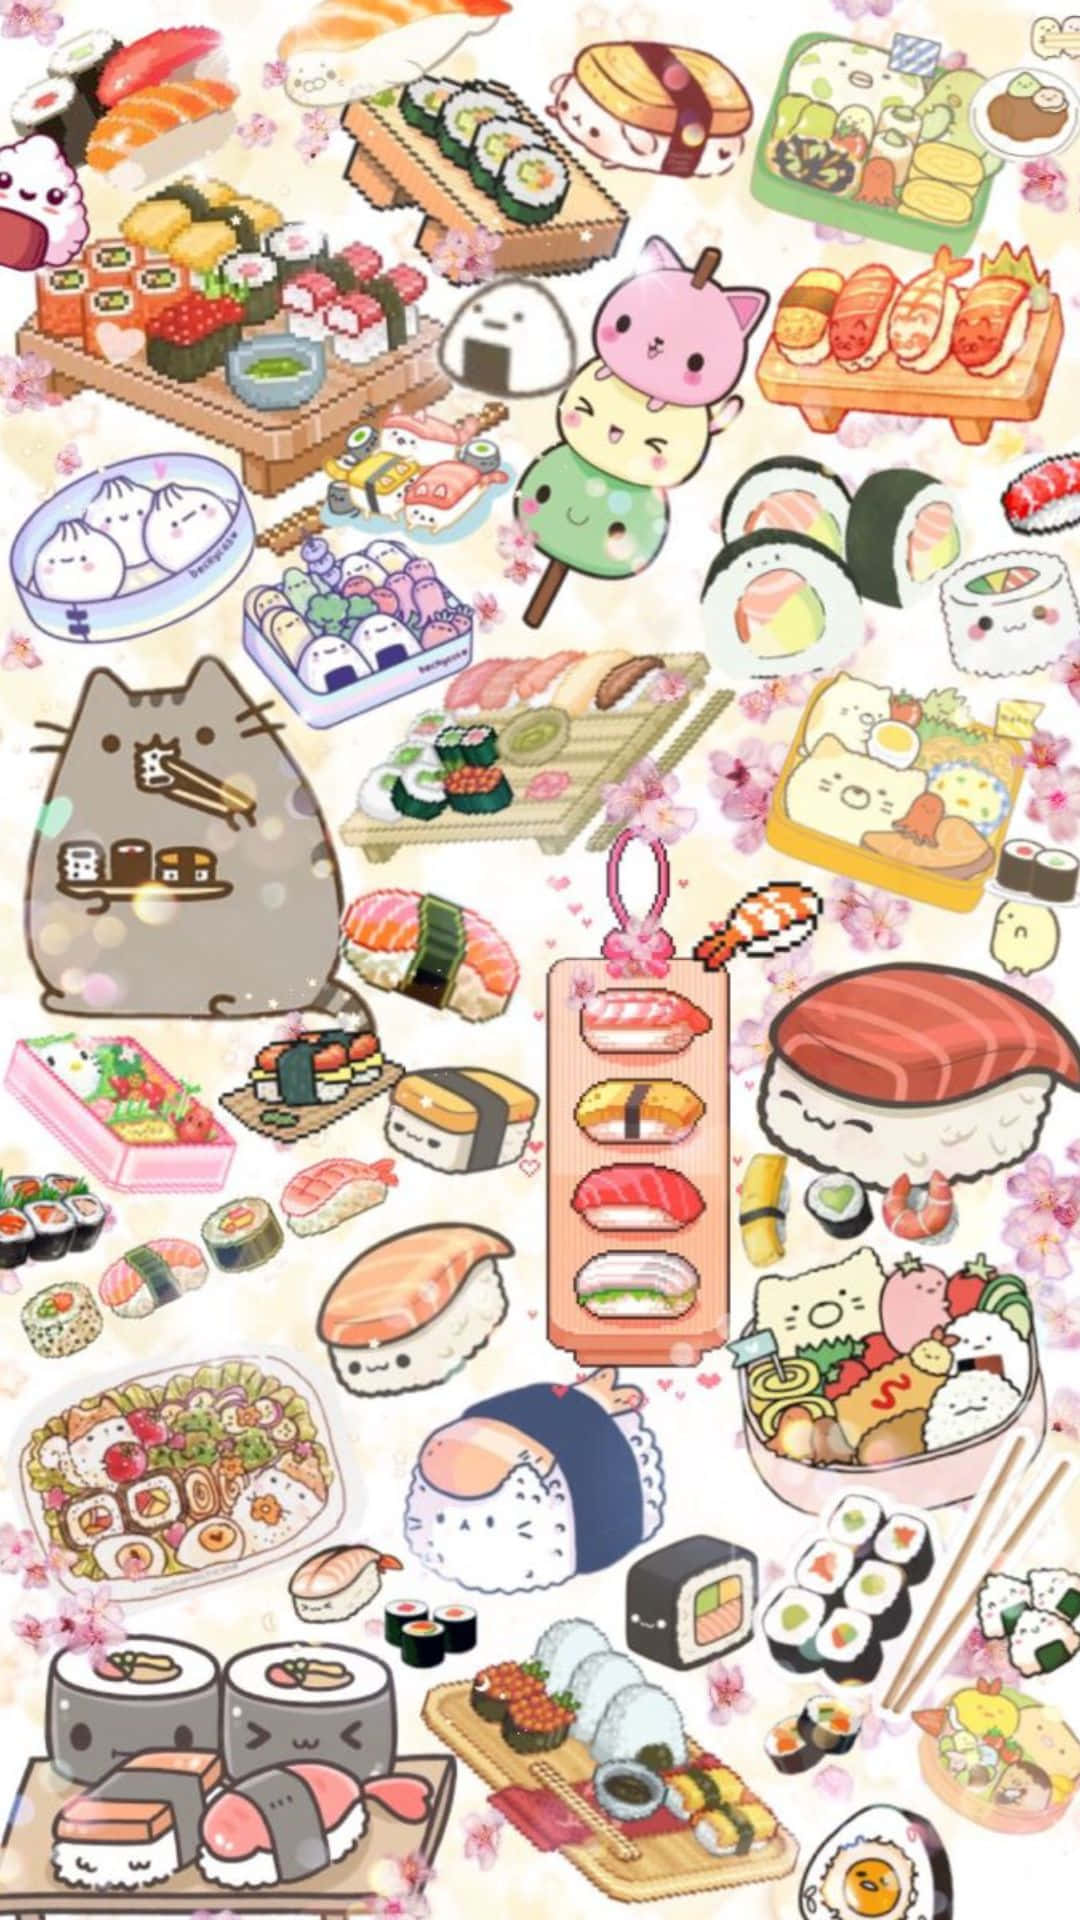 Cute Sushi Wallpaper Images  Free Download on Freepik